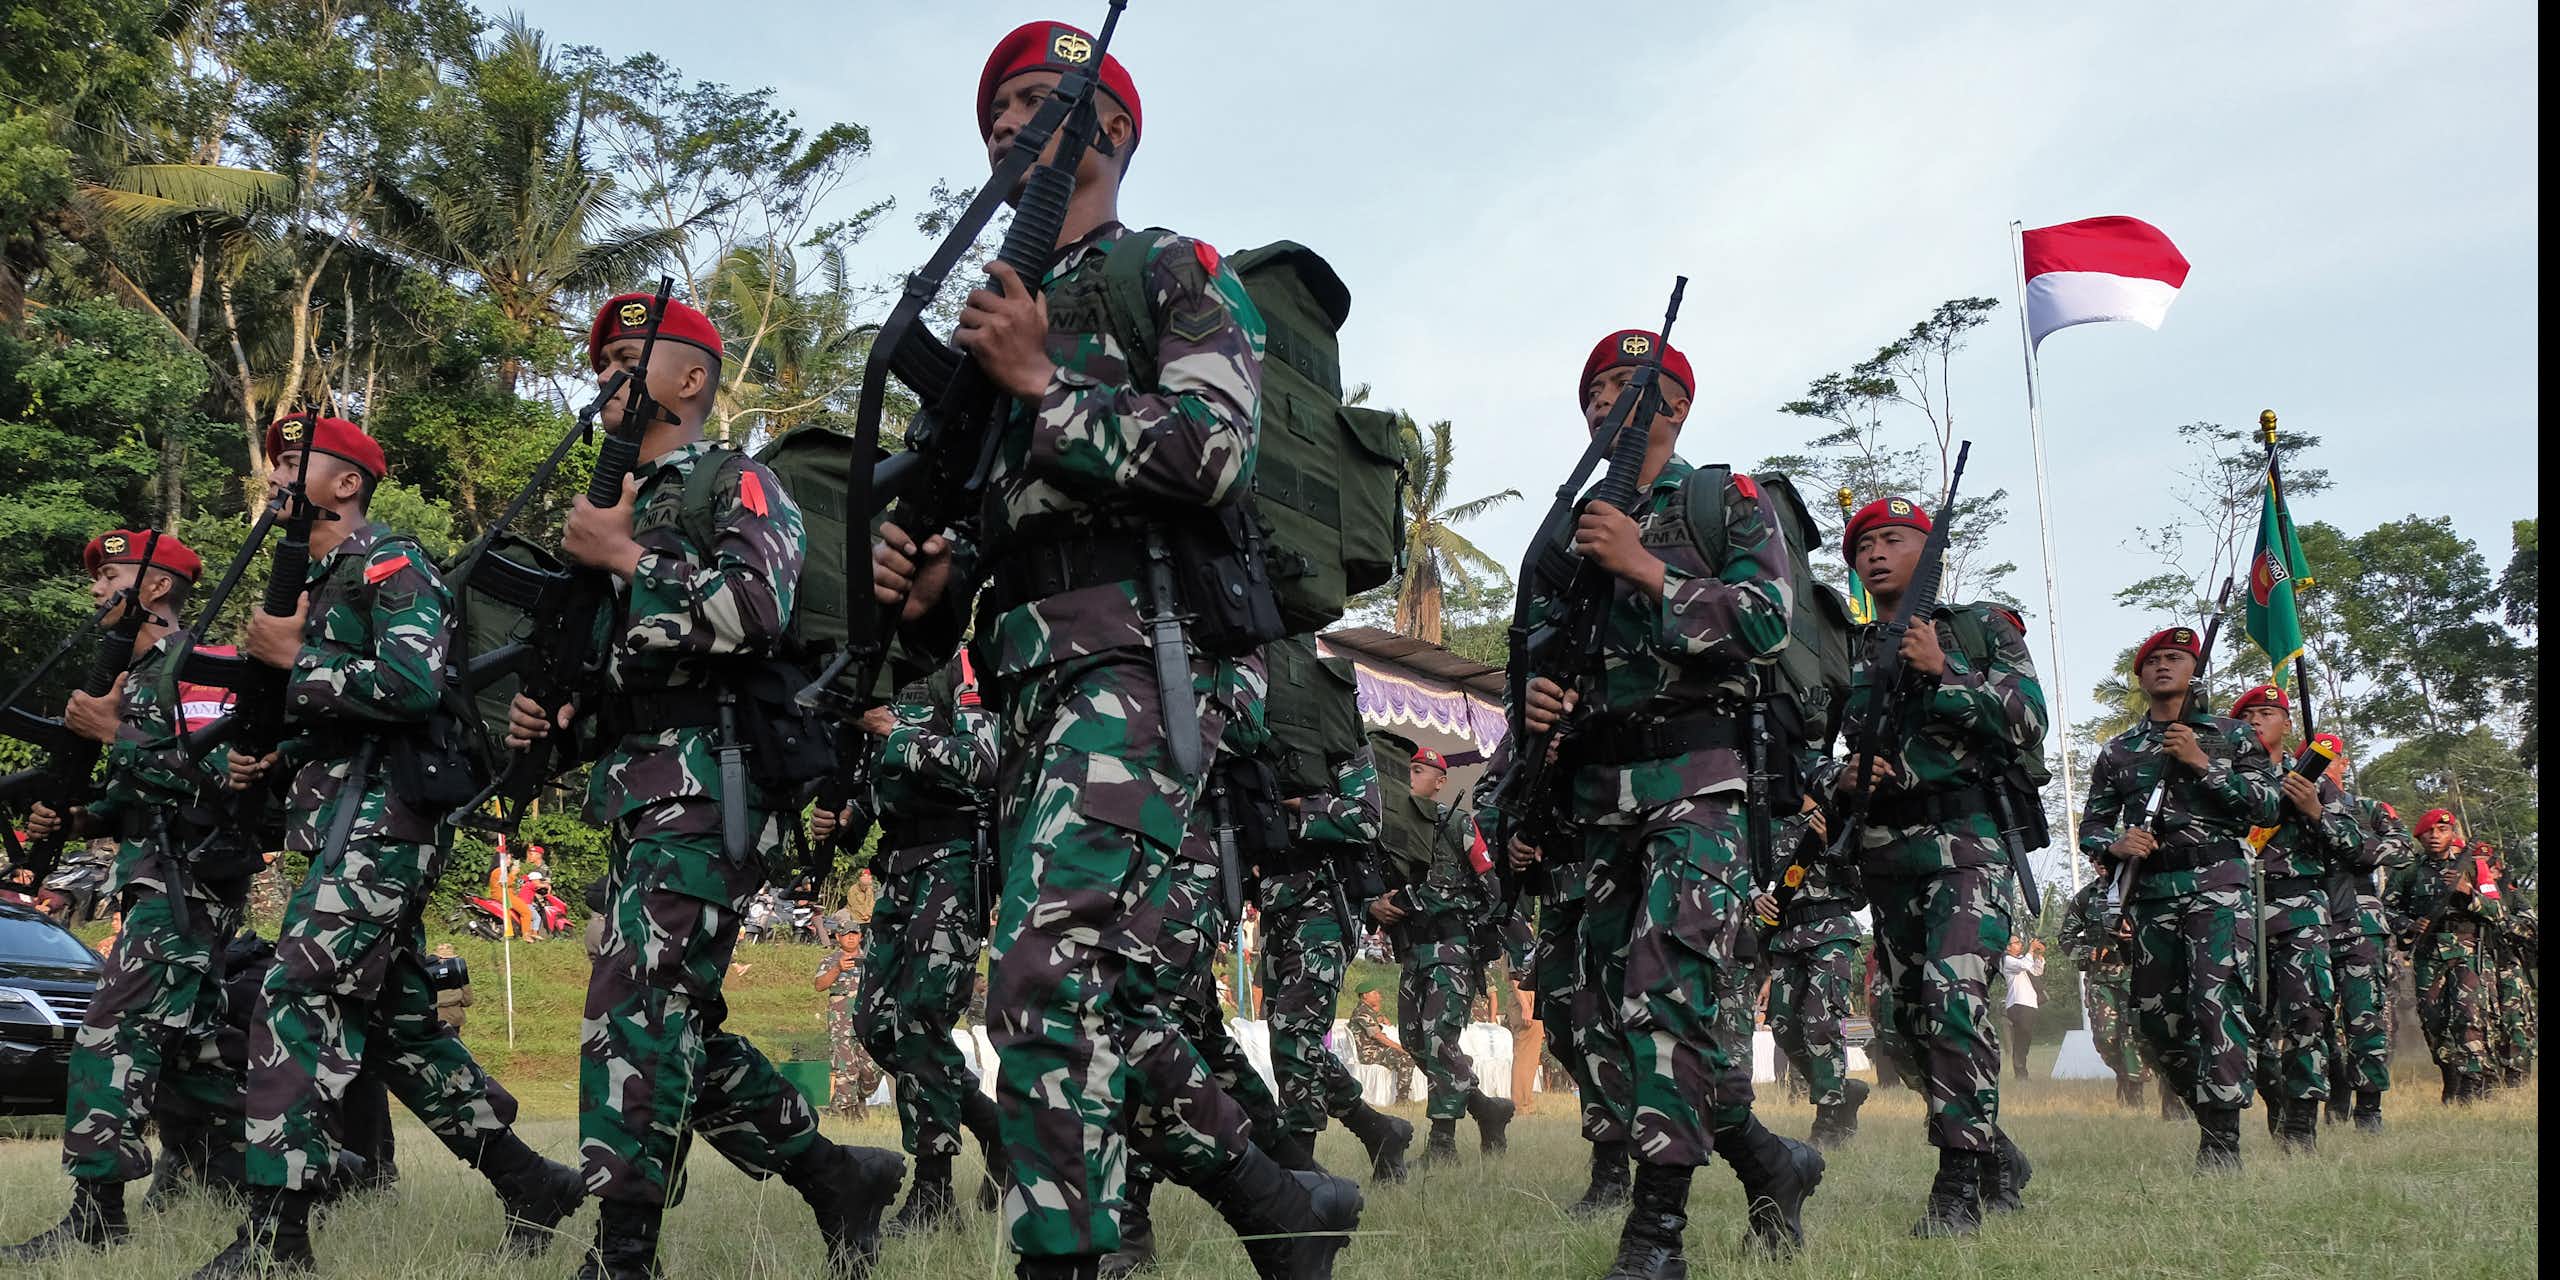 Mengapa militer lekat dengan citra represif? Menelisik sejarah militerisme Indonesia, Myanmar dan Thailand